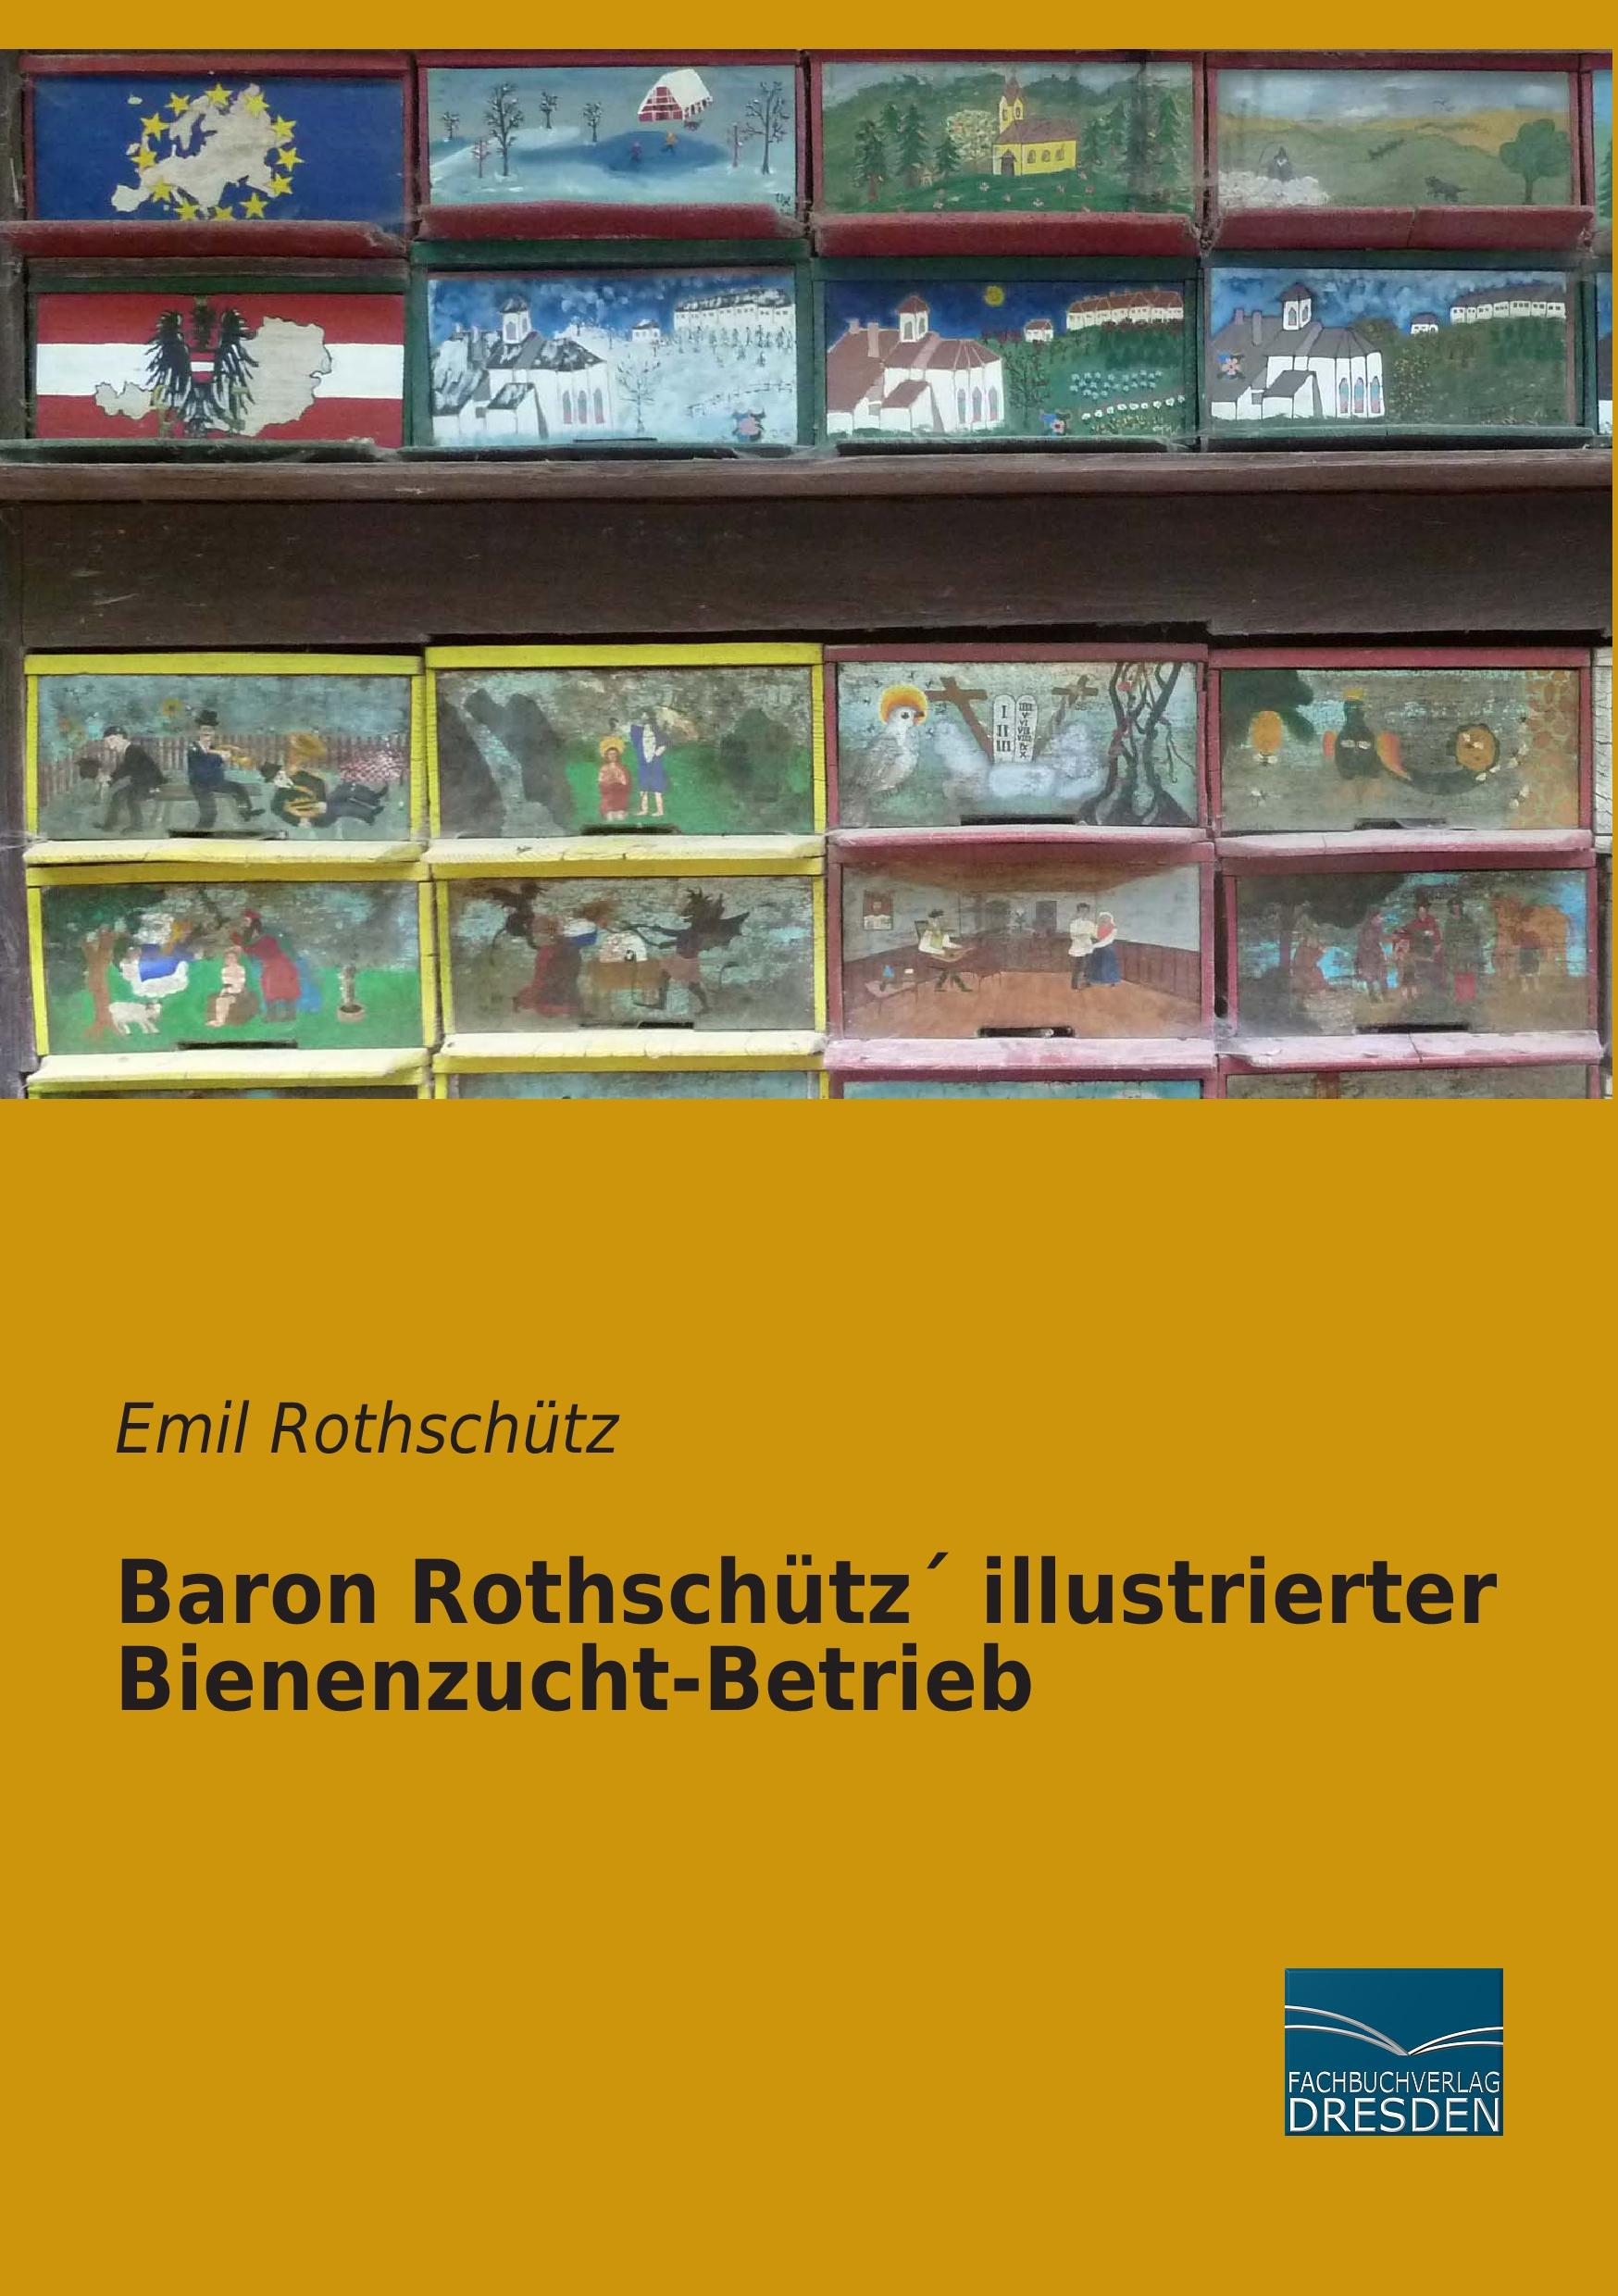 Baron Rothschütz´ illustrierter Bienenzucht-Betrieb / Emil Rothschütz / Taschenbuch / Paperback / 488 S. / Deutsch / 2015 / Fachbuchverlag-Dresden / EAN 9783956927997 - Rothschütz, Emil